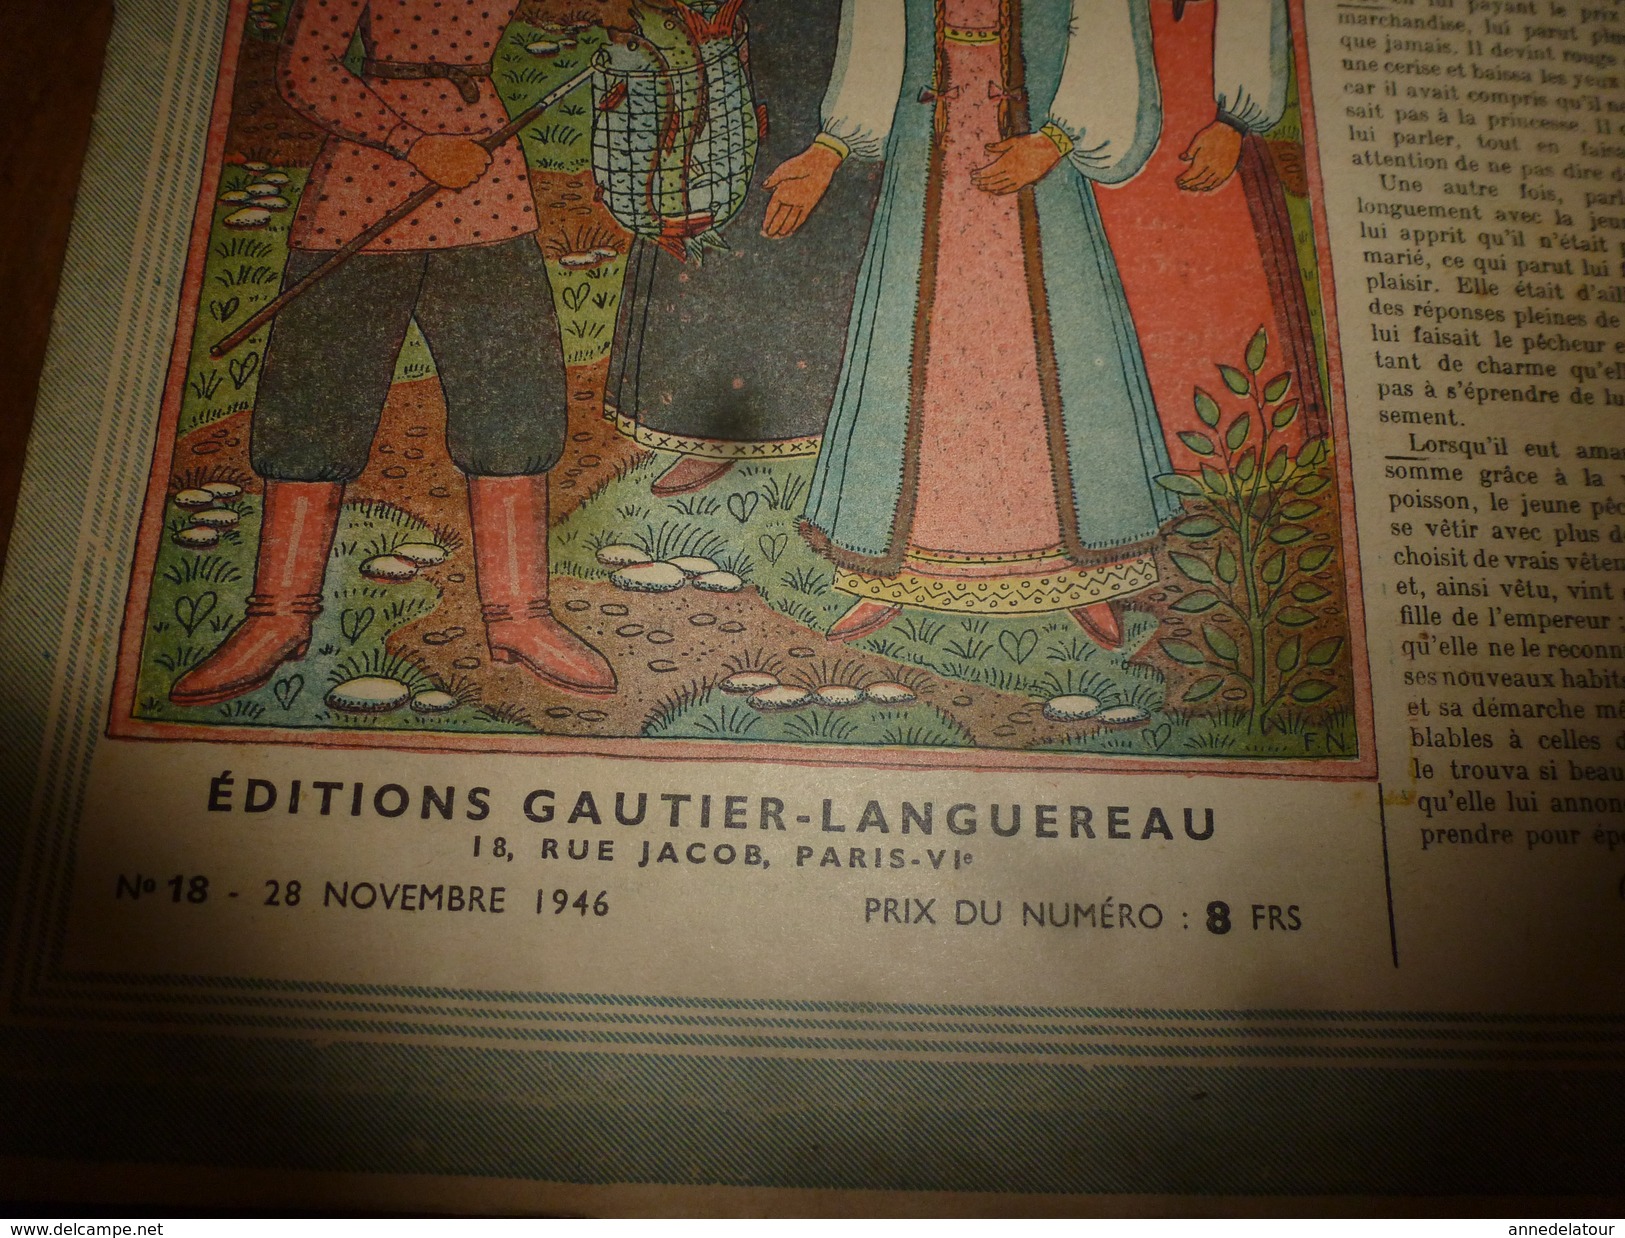 1946 LSDS (La Semaine De Suzette) :   LE PÊCHEUR (conte Russe)  ; Etc - La Semaine De Suzette